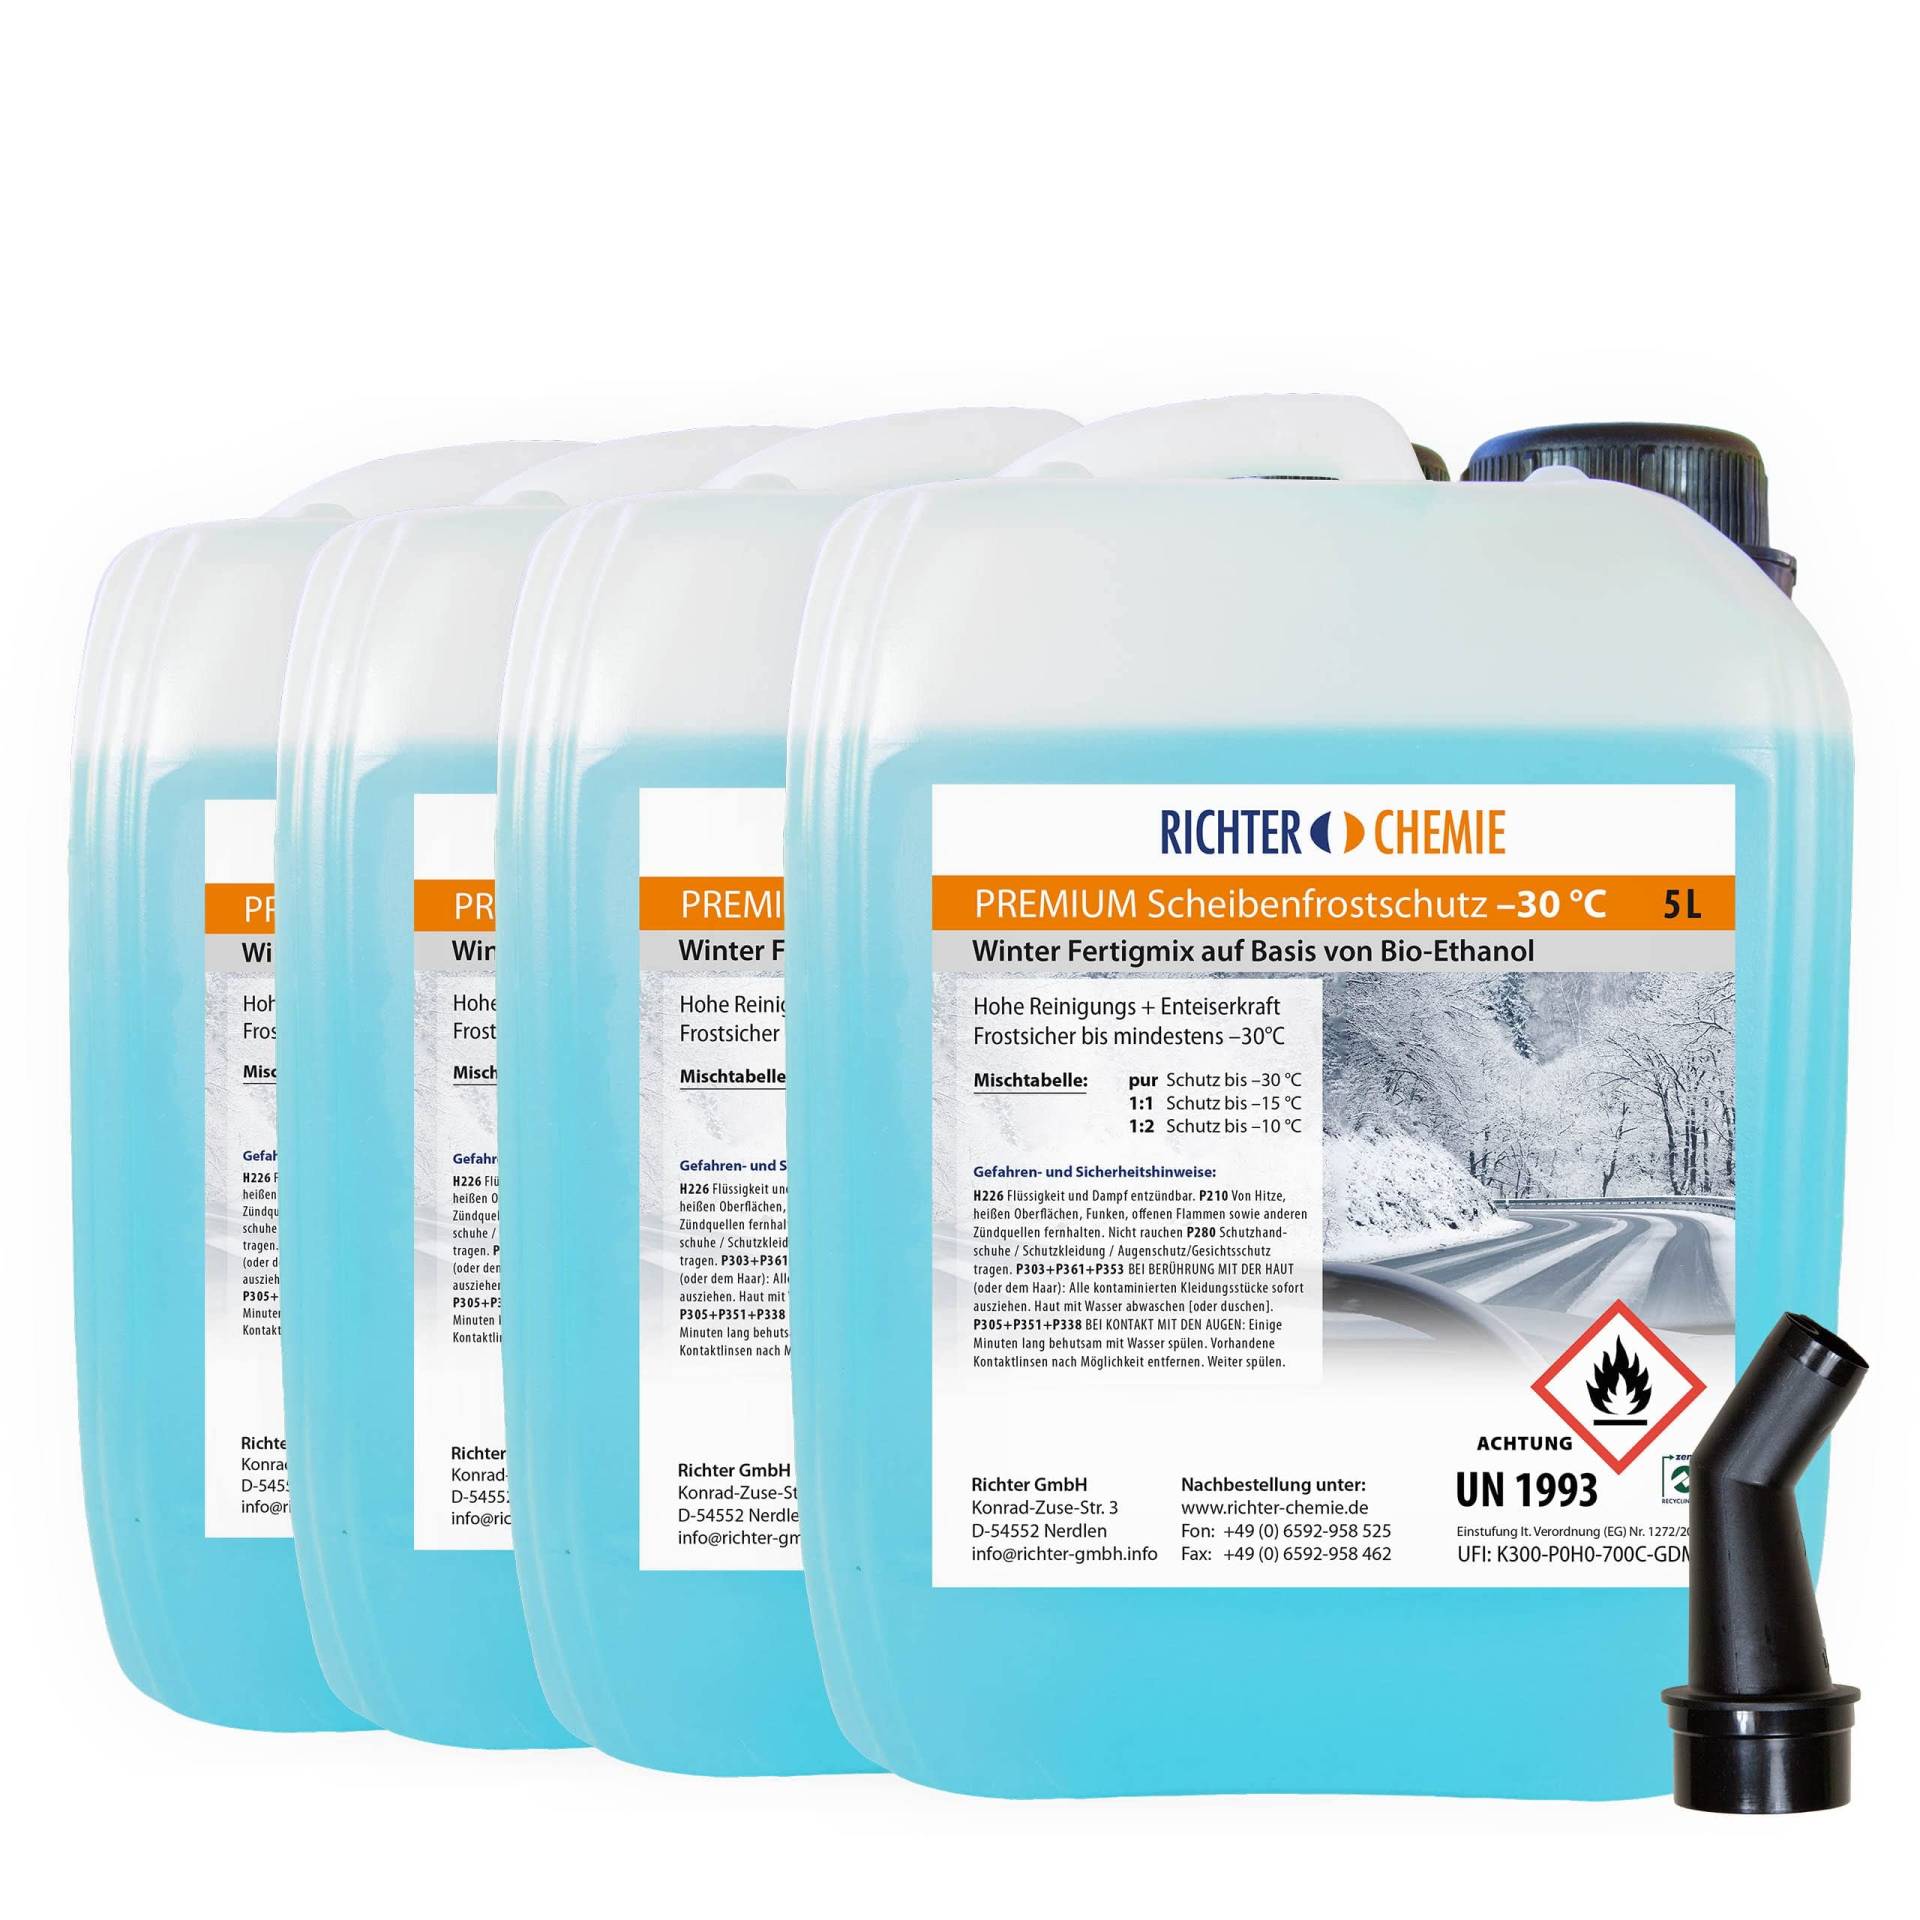 20L (4 x 5 Liter) Premium Scheibenfrostschutz -30°C Wischwasser Fertigmix Auto Scheibenwaschanlage Citrus Duft von Richter Chemie